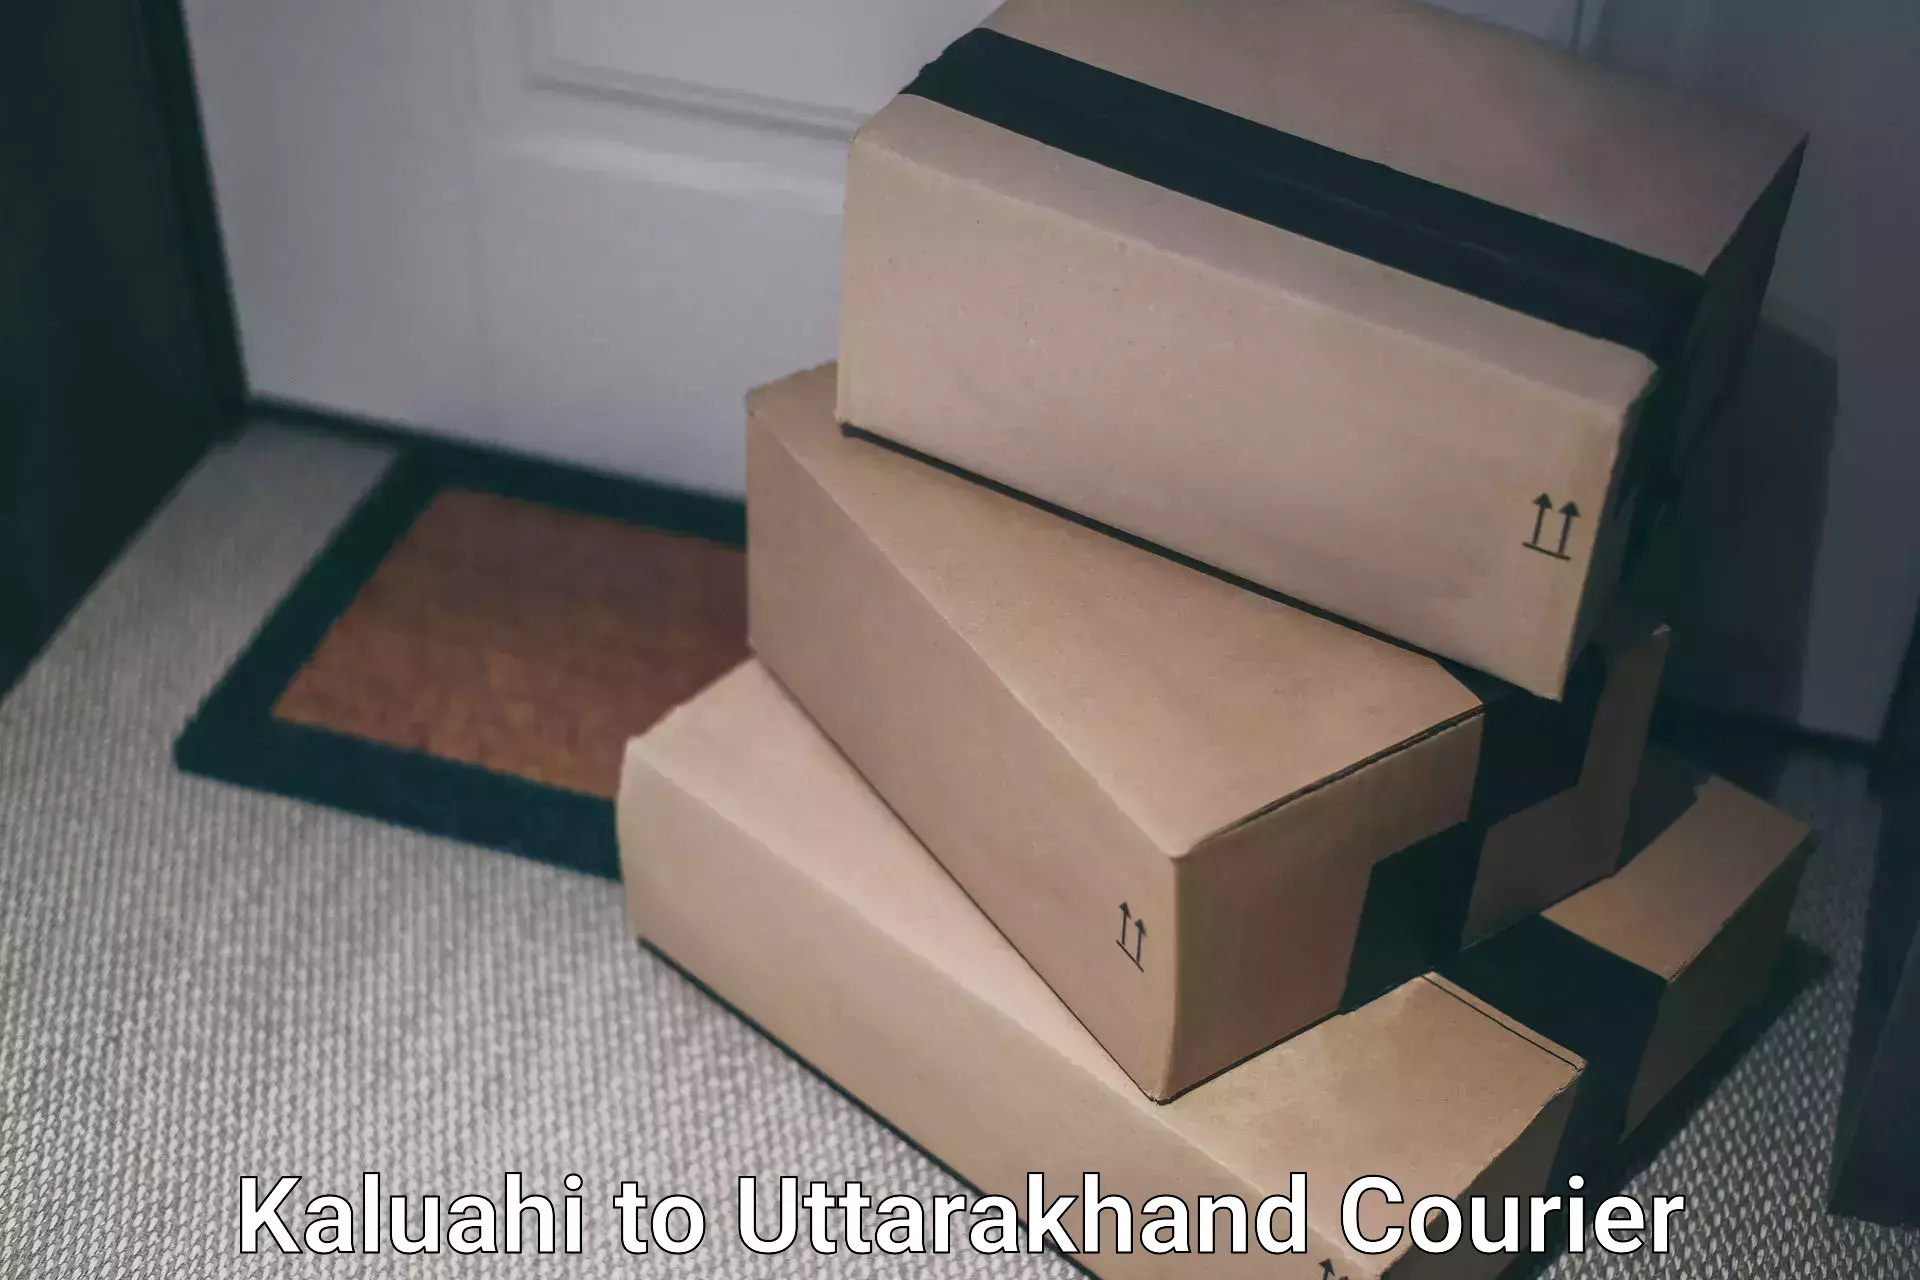 Discount courier rates Kaluahi to Pithoragarh